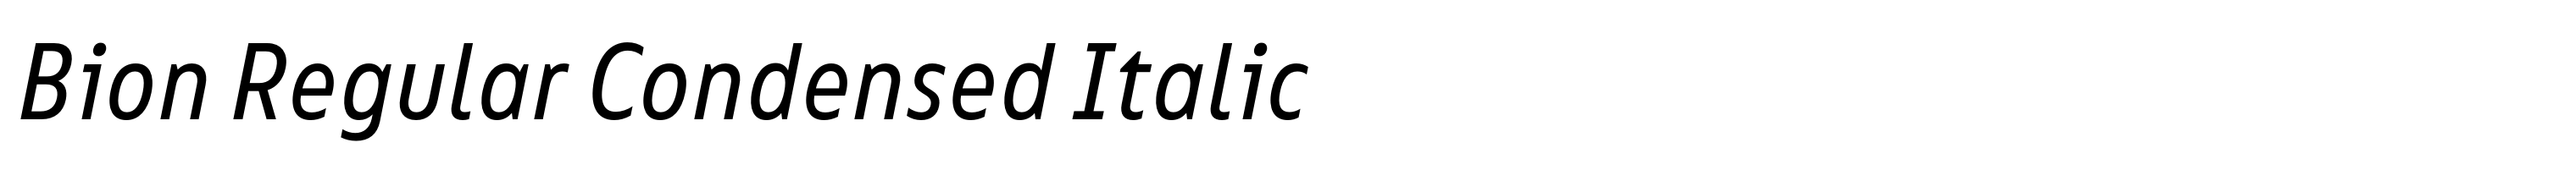 Bion Regular Condensed Italic